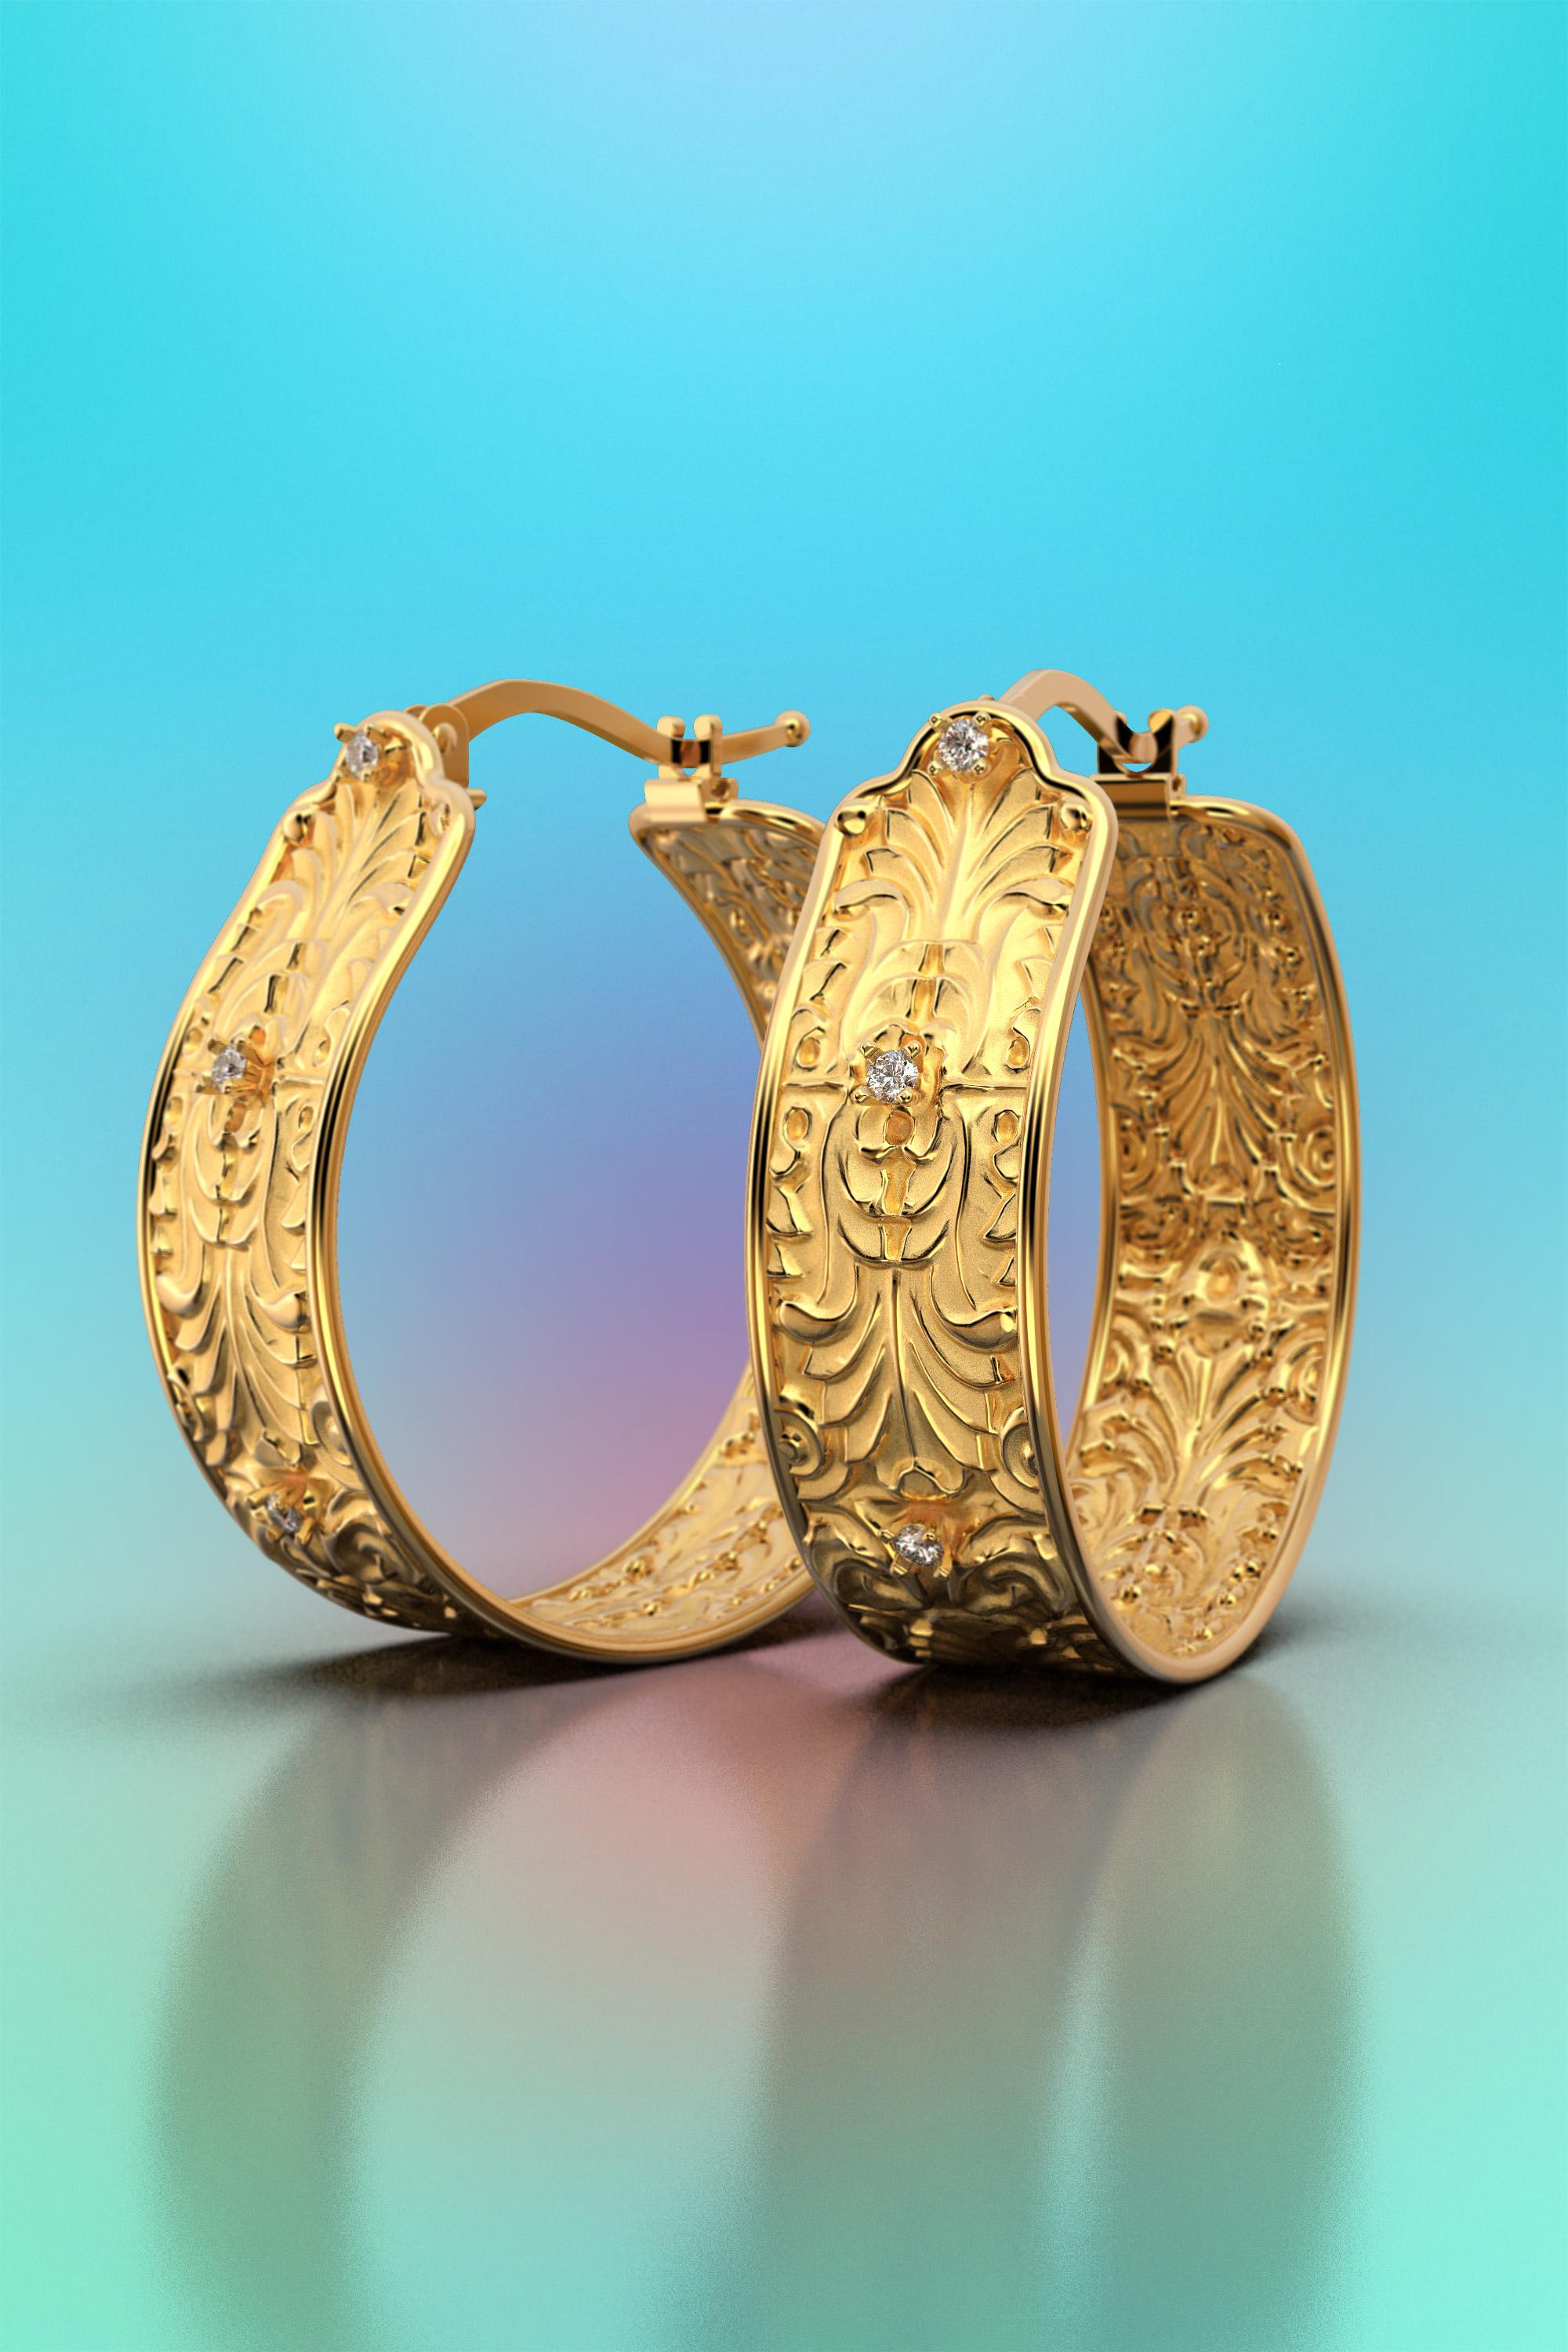 Barocke Ohrringe mit natürlichen Diamanten G VS aus poliertem und rohem massivem 14-karätigem Gold auf Bestellung. 
Die Ohrringe werden mit einem zuverlässigen Schnappverschluss gesichert.
Größe: 27 mm x 27 mm x 9 mm groß
Edelsteine : 6 natürliche